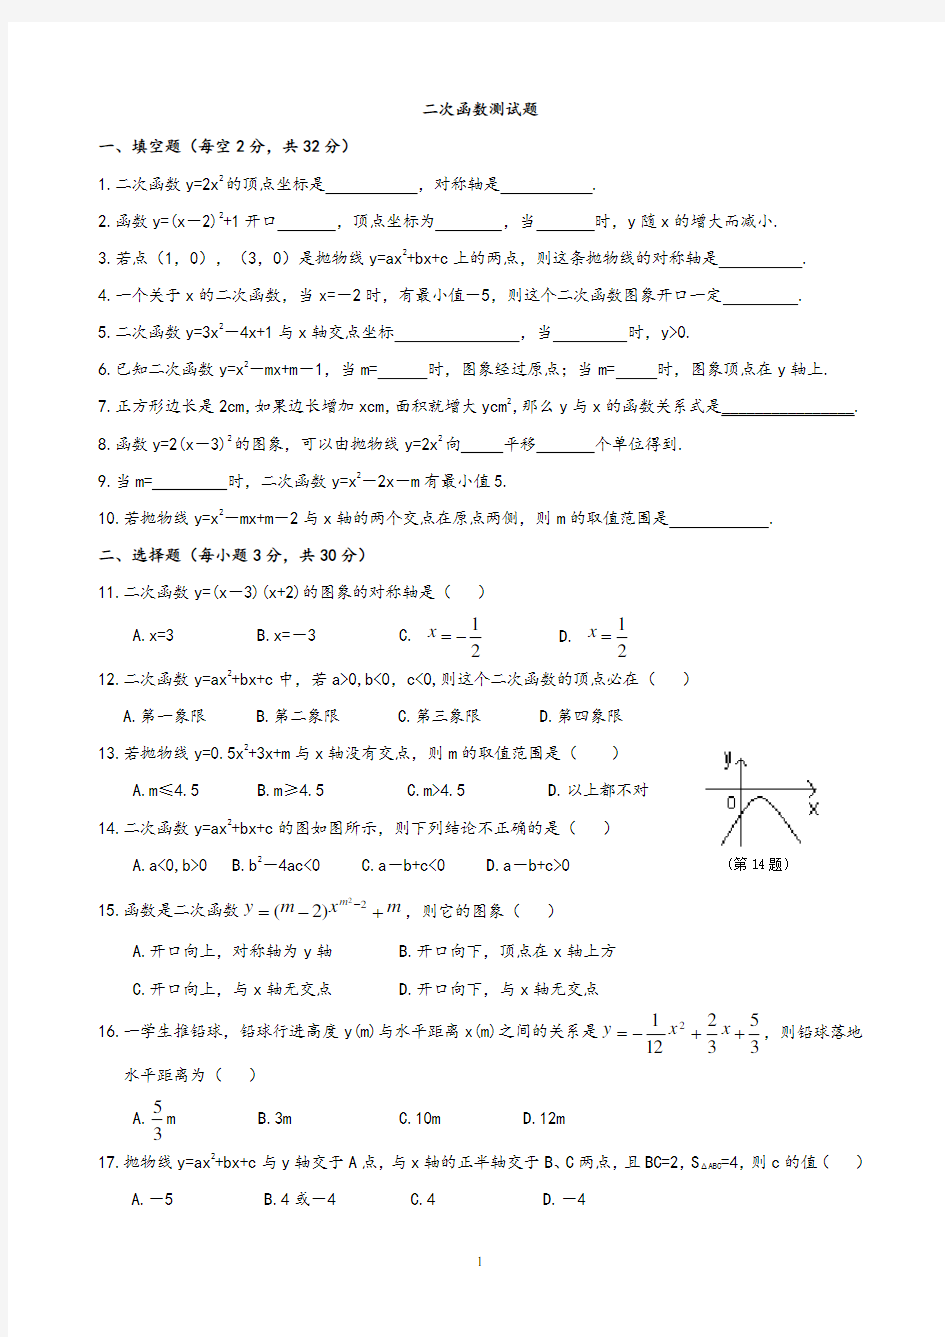 人教版九年级下册数学全册测试卷(含答案).pdf